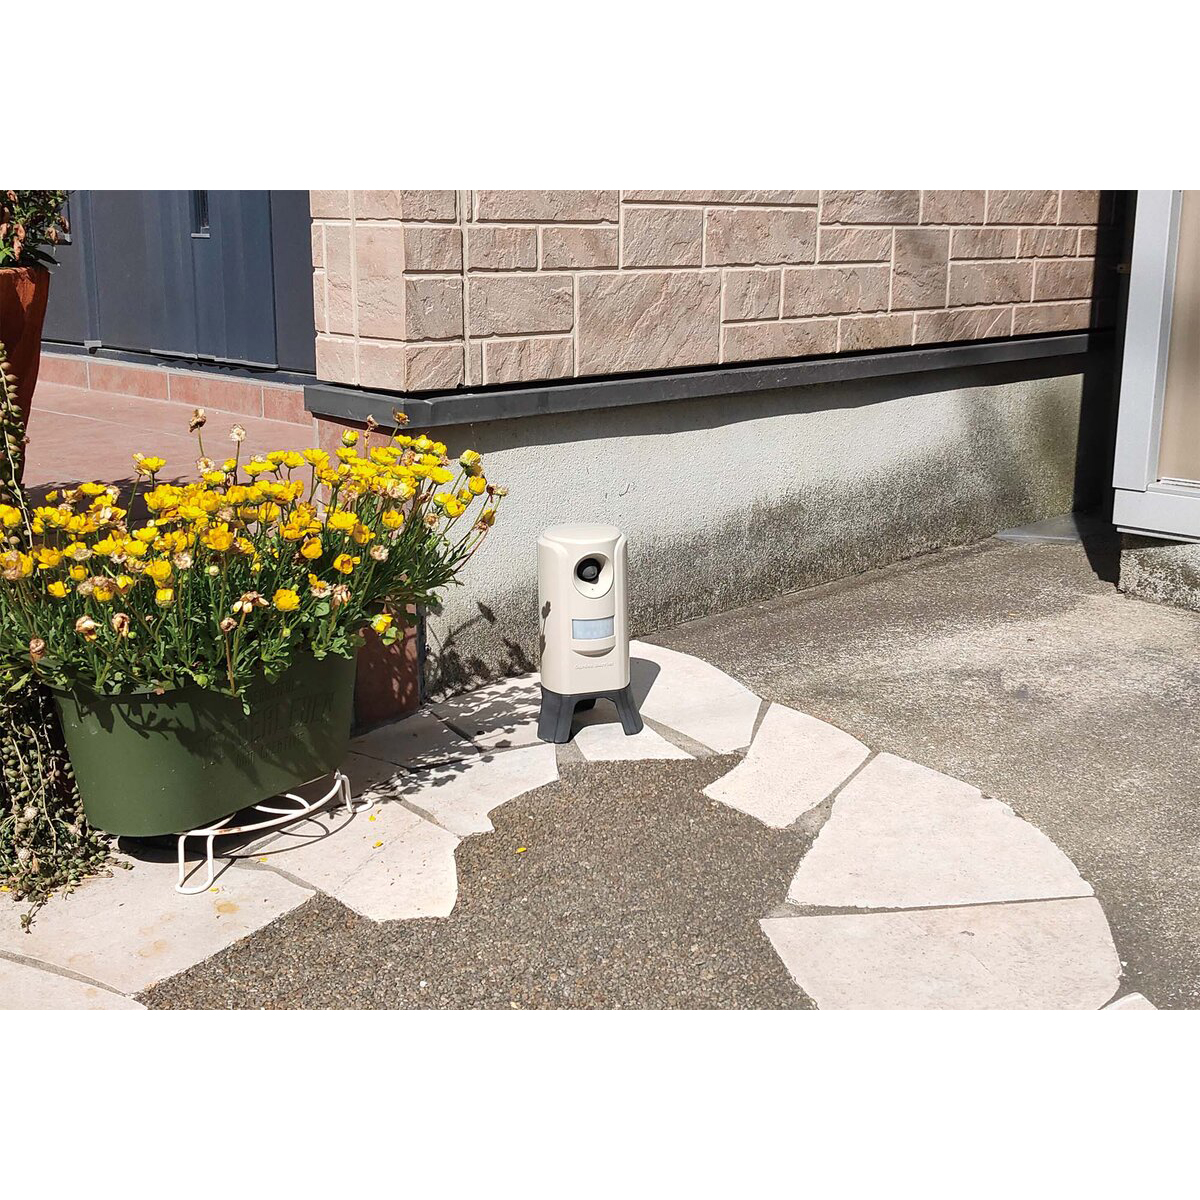 ネコ被害軽減器 ガーデンバリア3 変動超音波式 充電式 日本製 準防水 赤外線センサー式